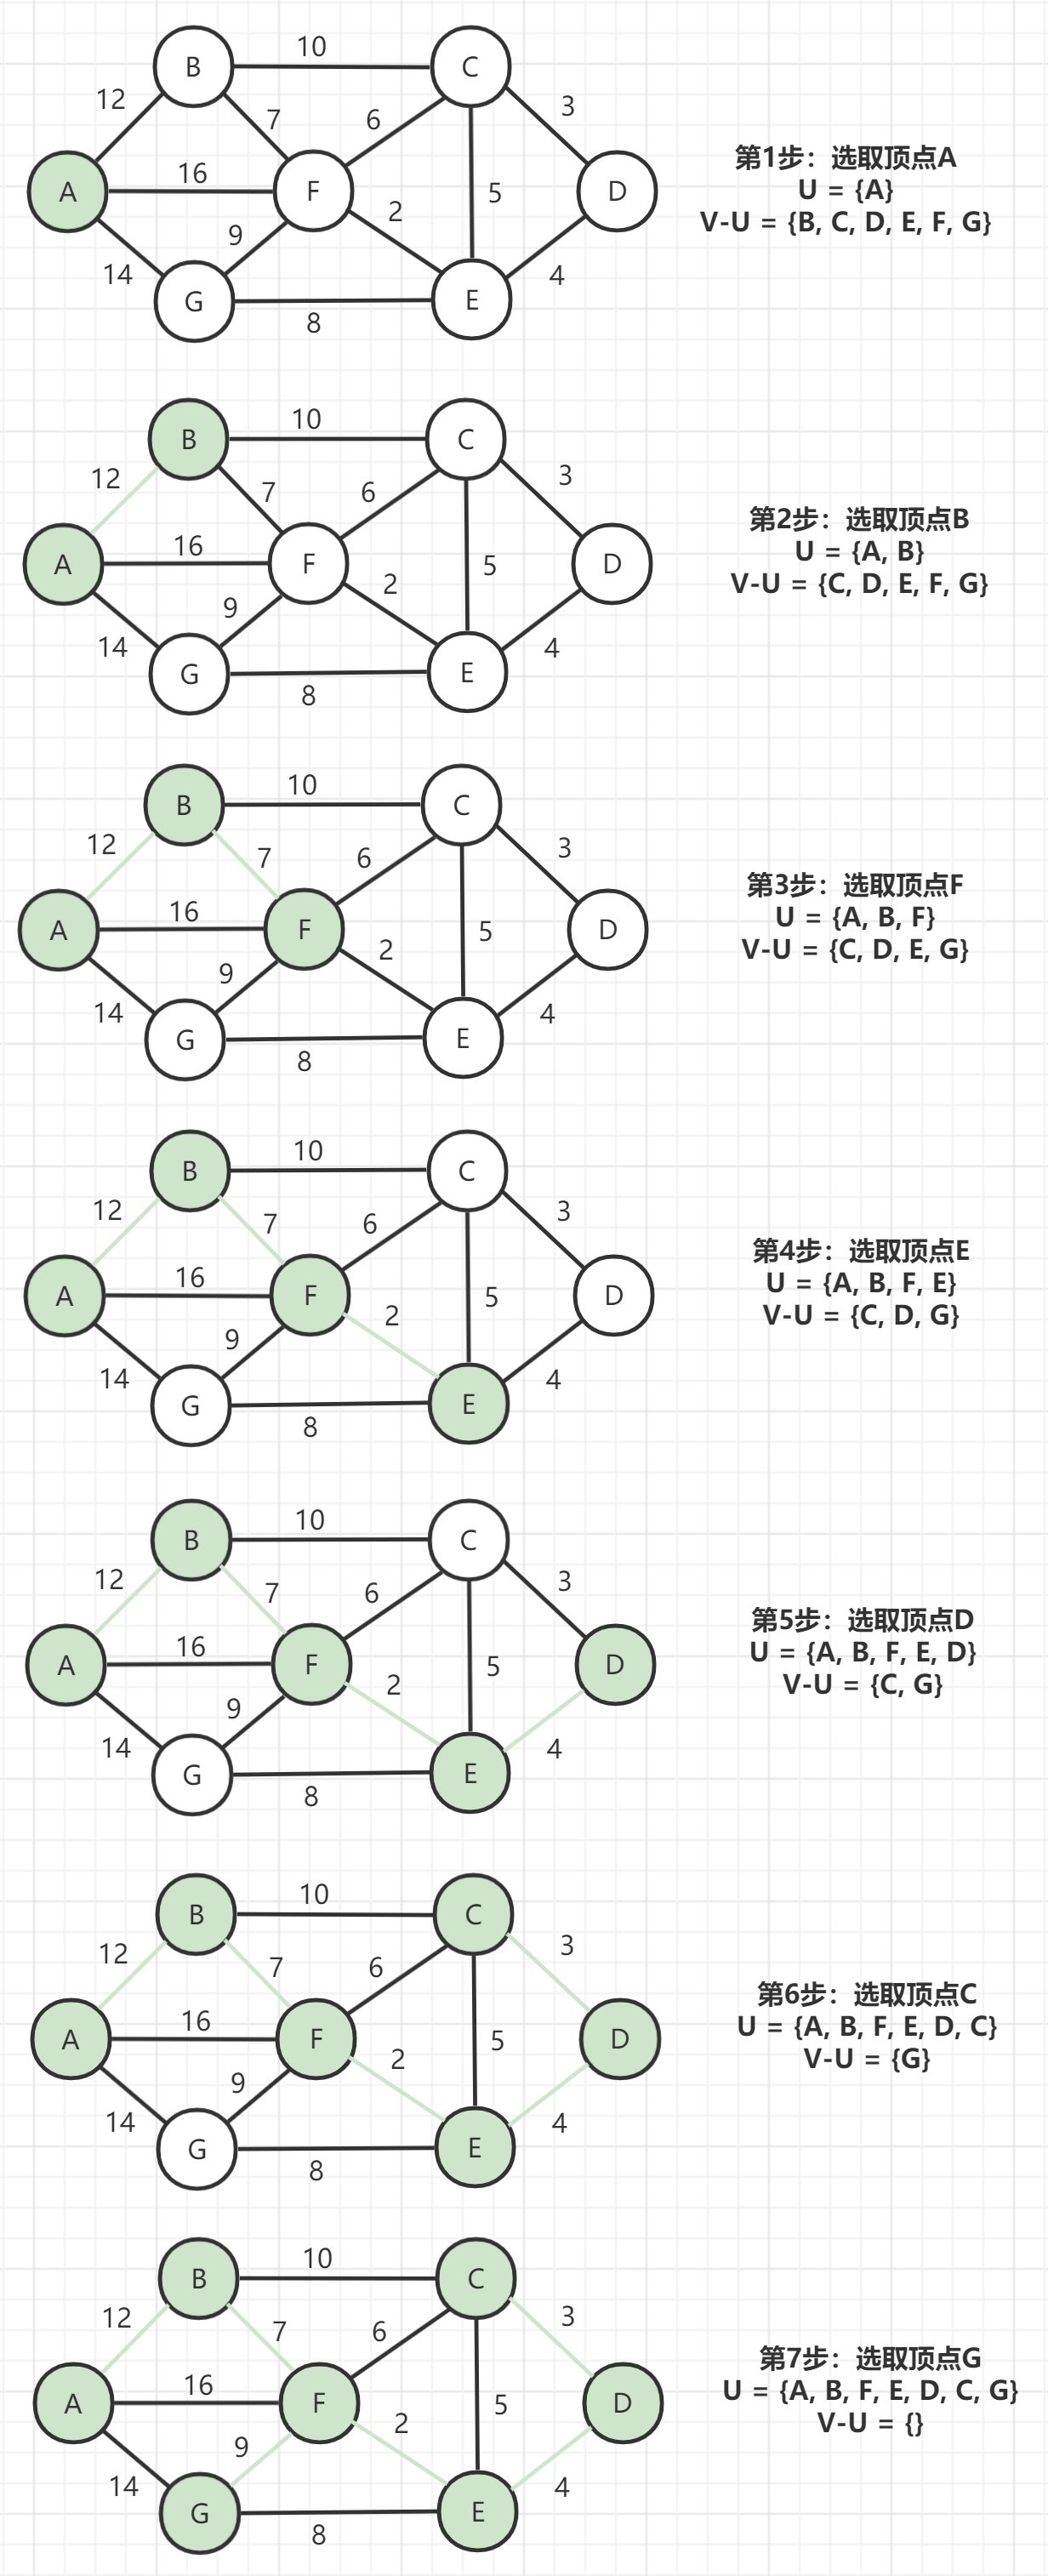 Prim算法-图5